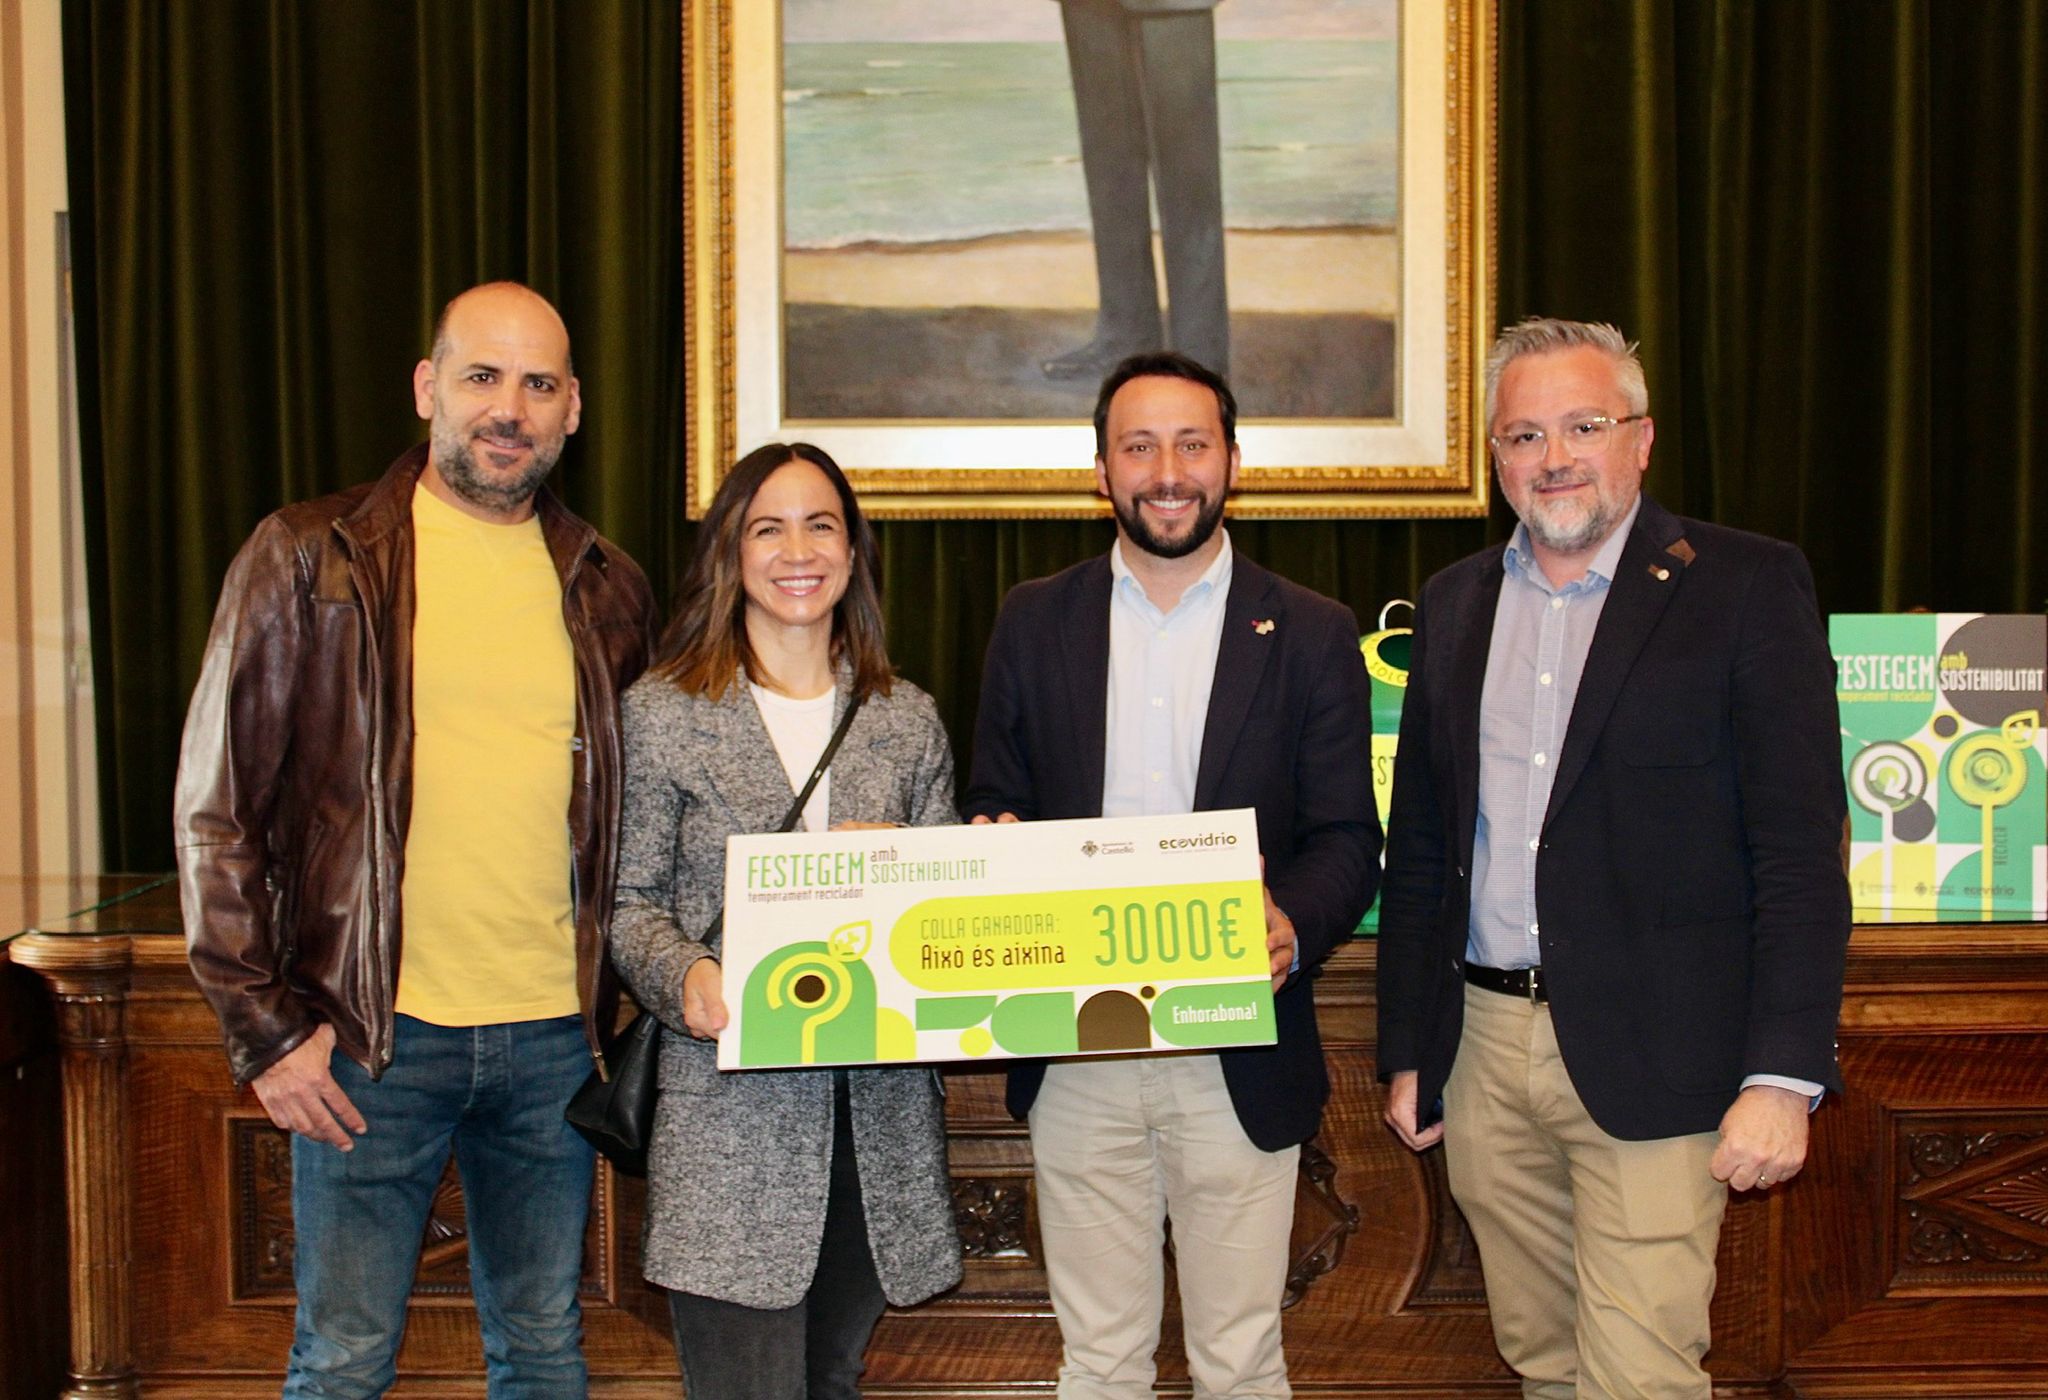 L'Ajuntament i Ecovidrio entreguen el premi de la campanya de foment del reciclatge en les festes de la Magdalena a la colla ‘Aixó és aixina’